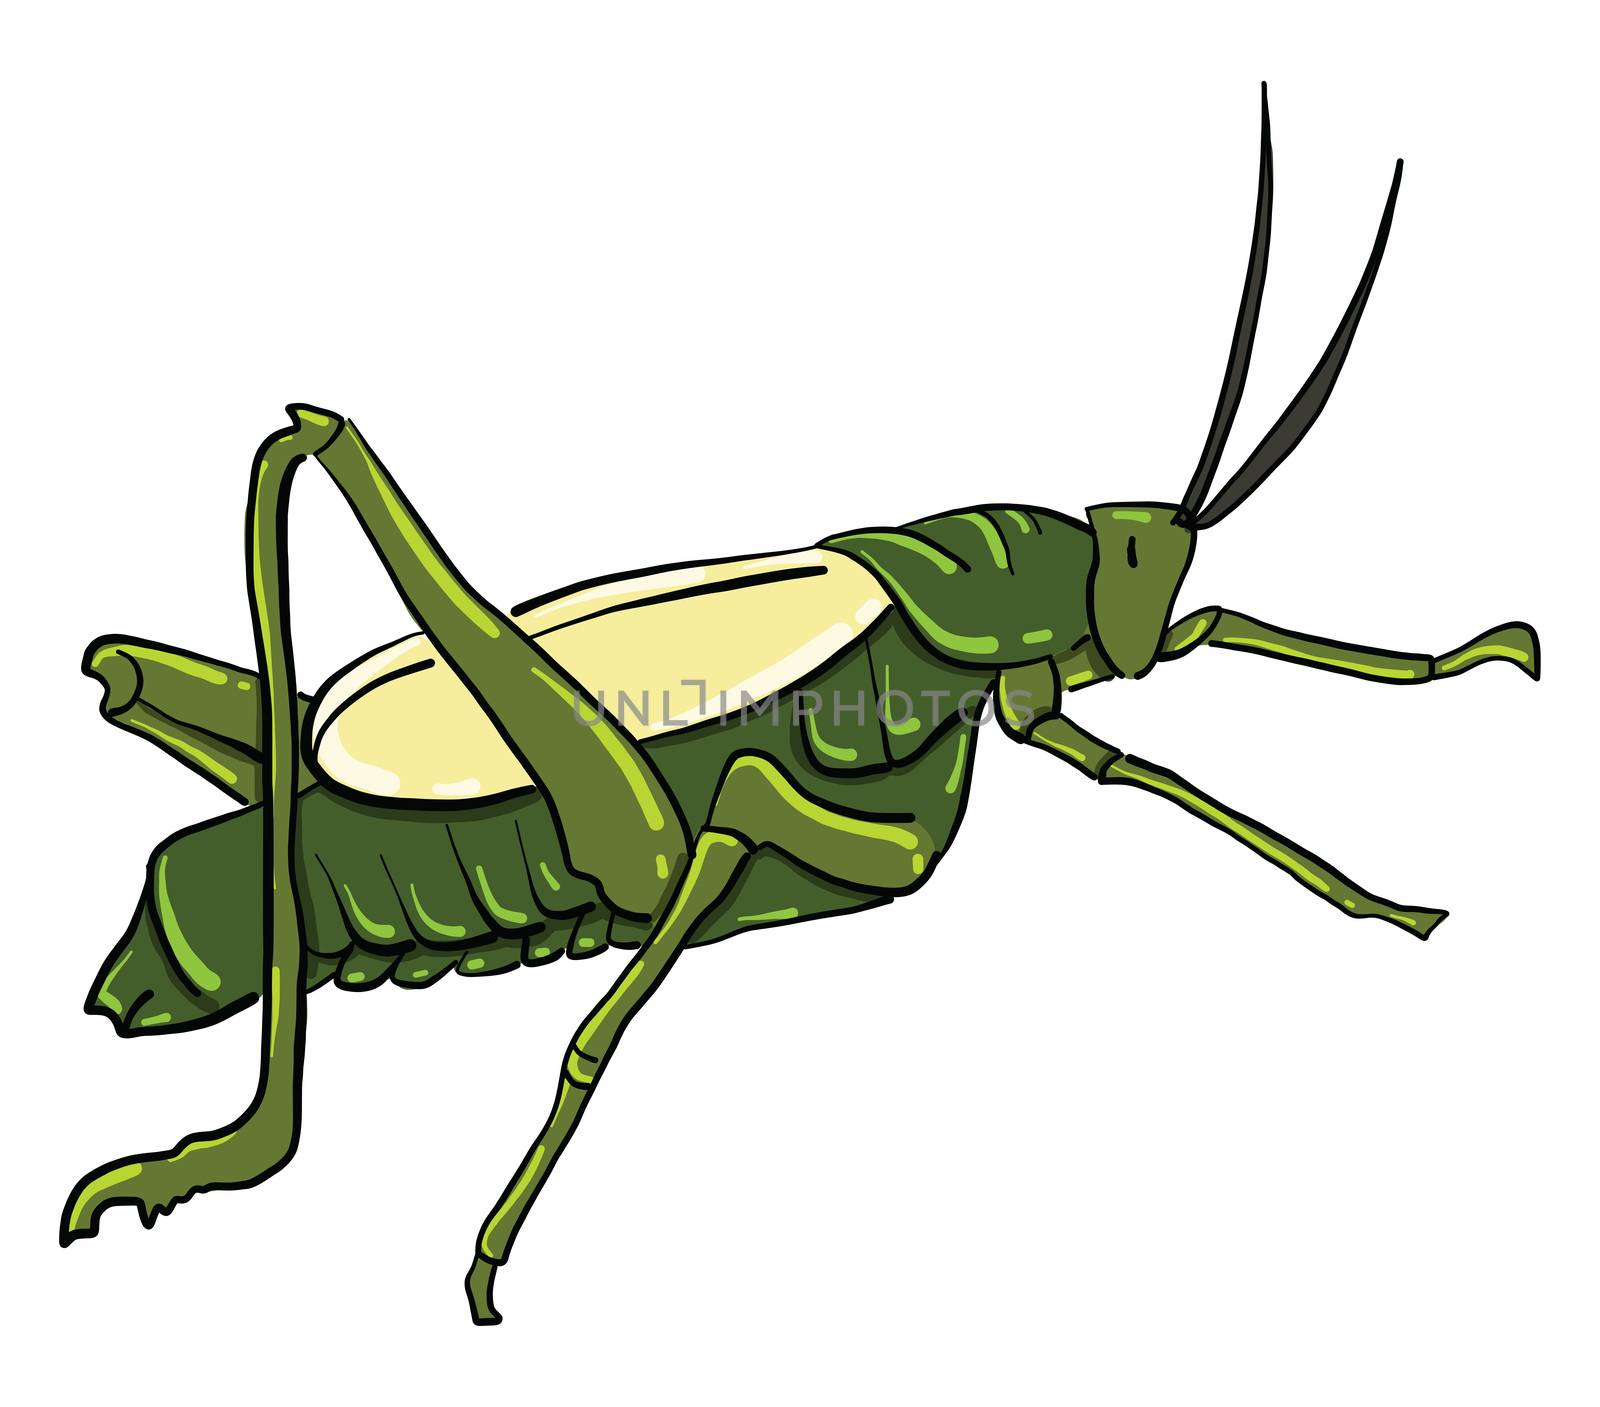 Grasshopper , illustration, vector on white background by Morphart